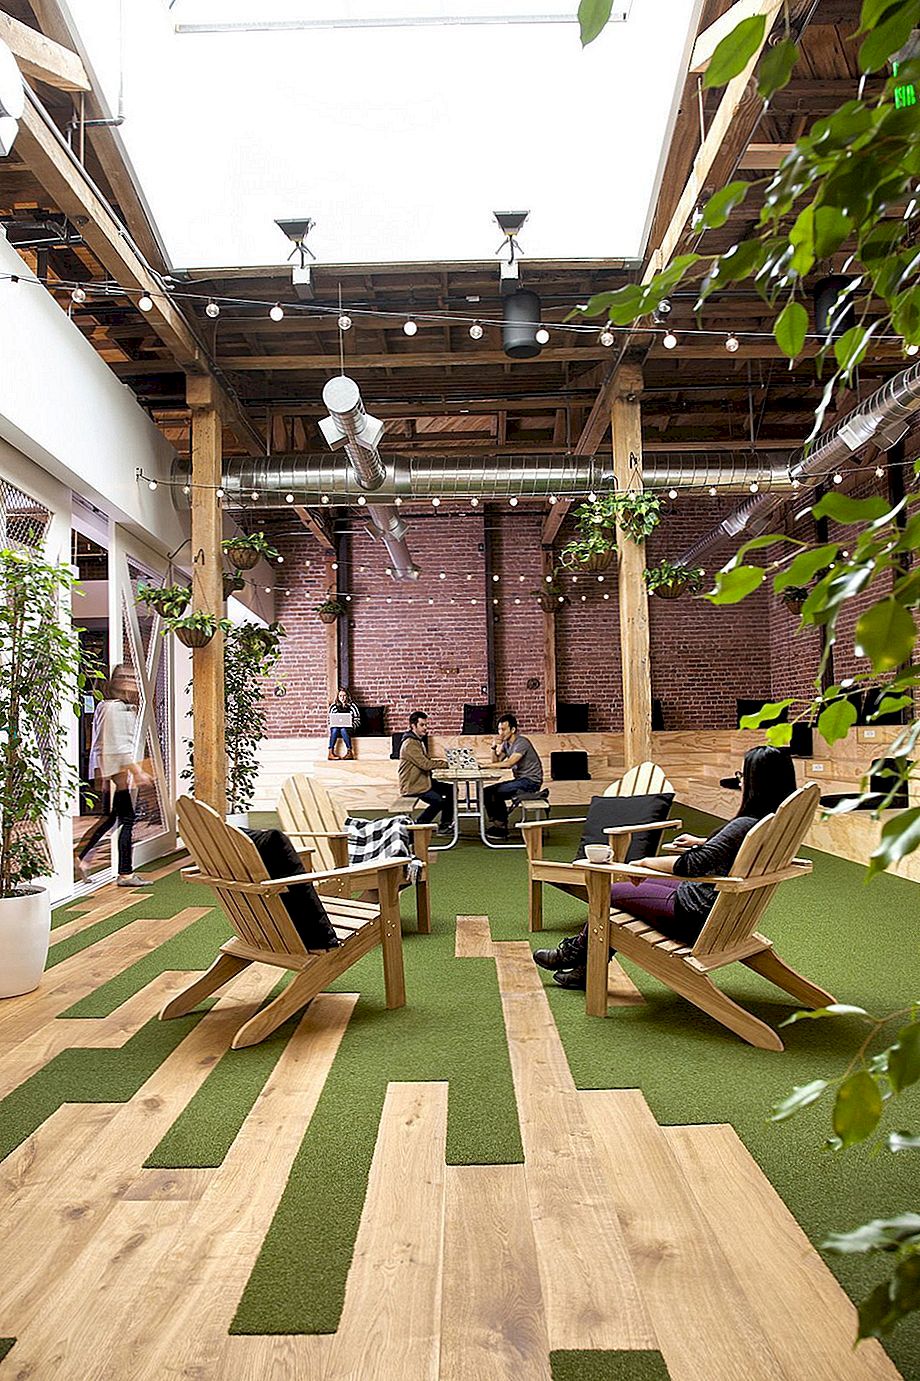 The GitHub HQ có quán bar và quán cà phê thay vì văn phòng